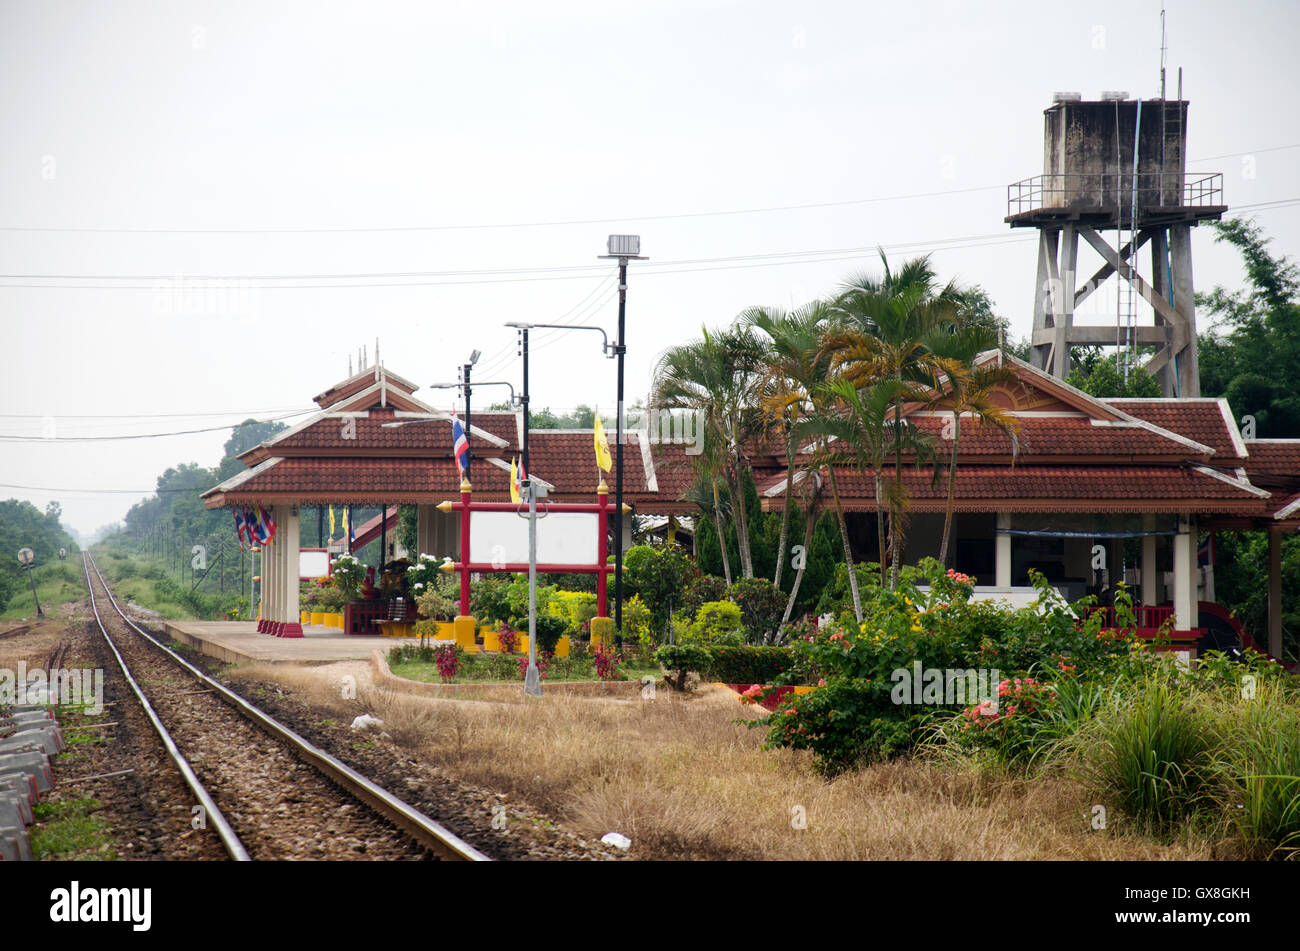 Les voies de chemin de fer et de la gare de Wat Chang Hai Ratburanaram Luang Pu Thuat le 13 juillet 2016 à Pattani provinces méridionales de Tha Banque D'Images